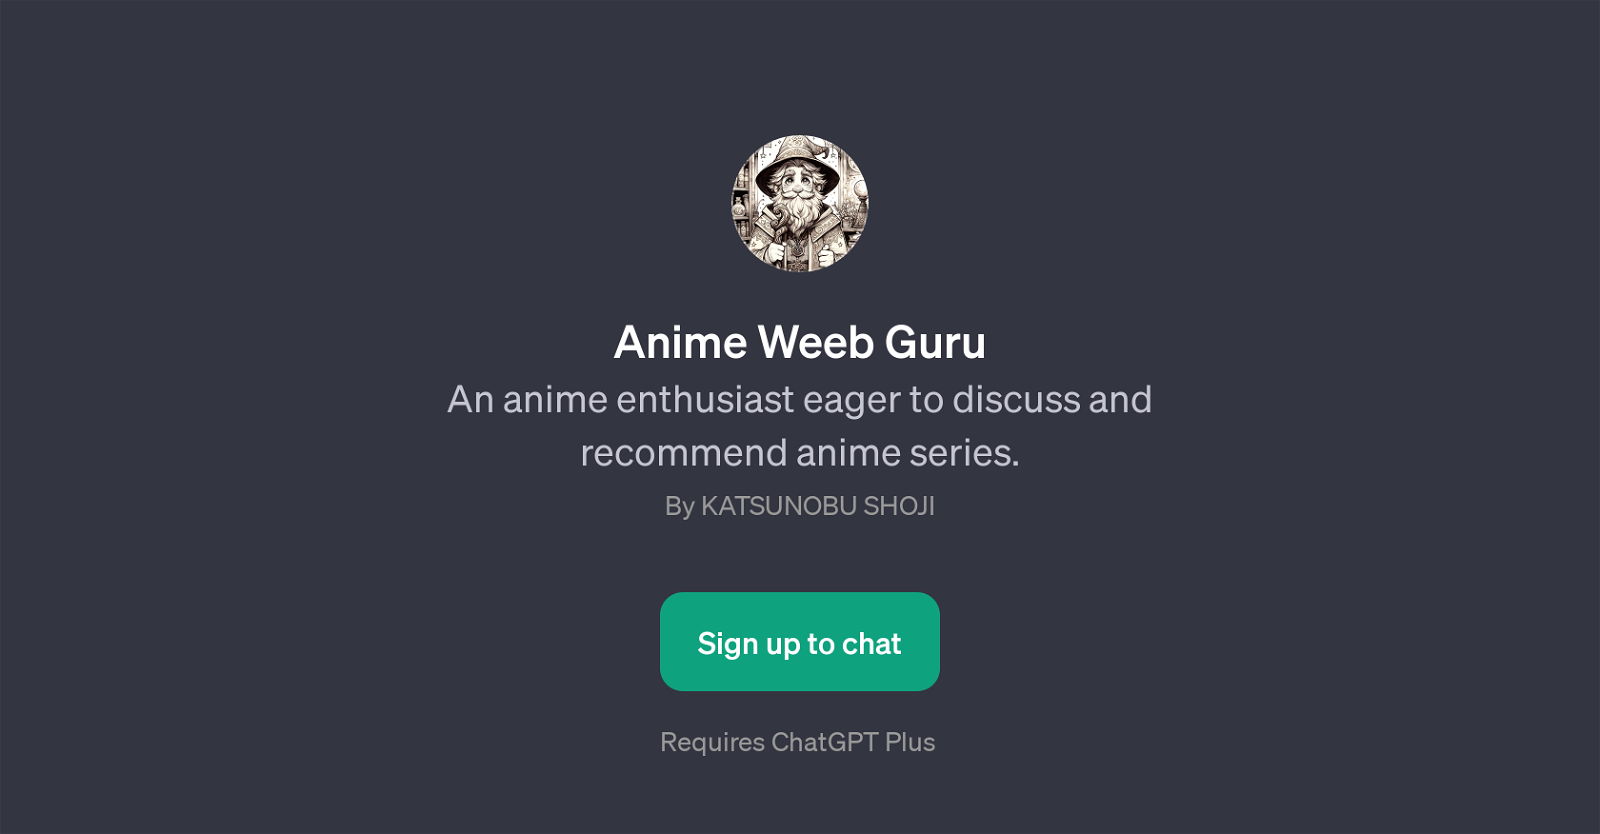 Anime Weeb Guru website